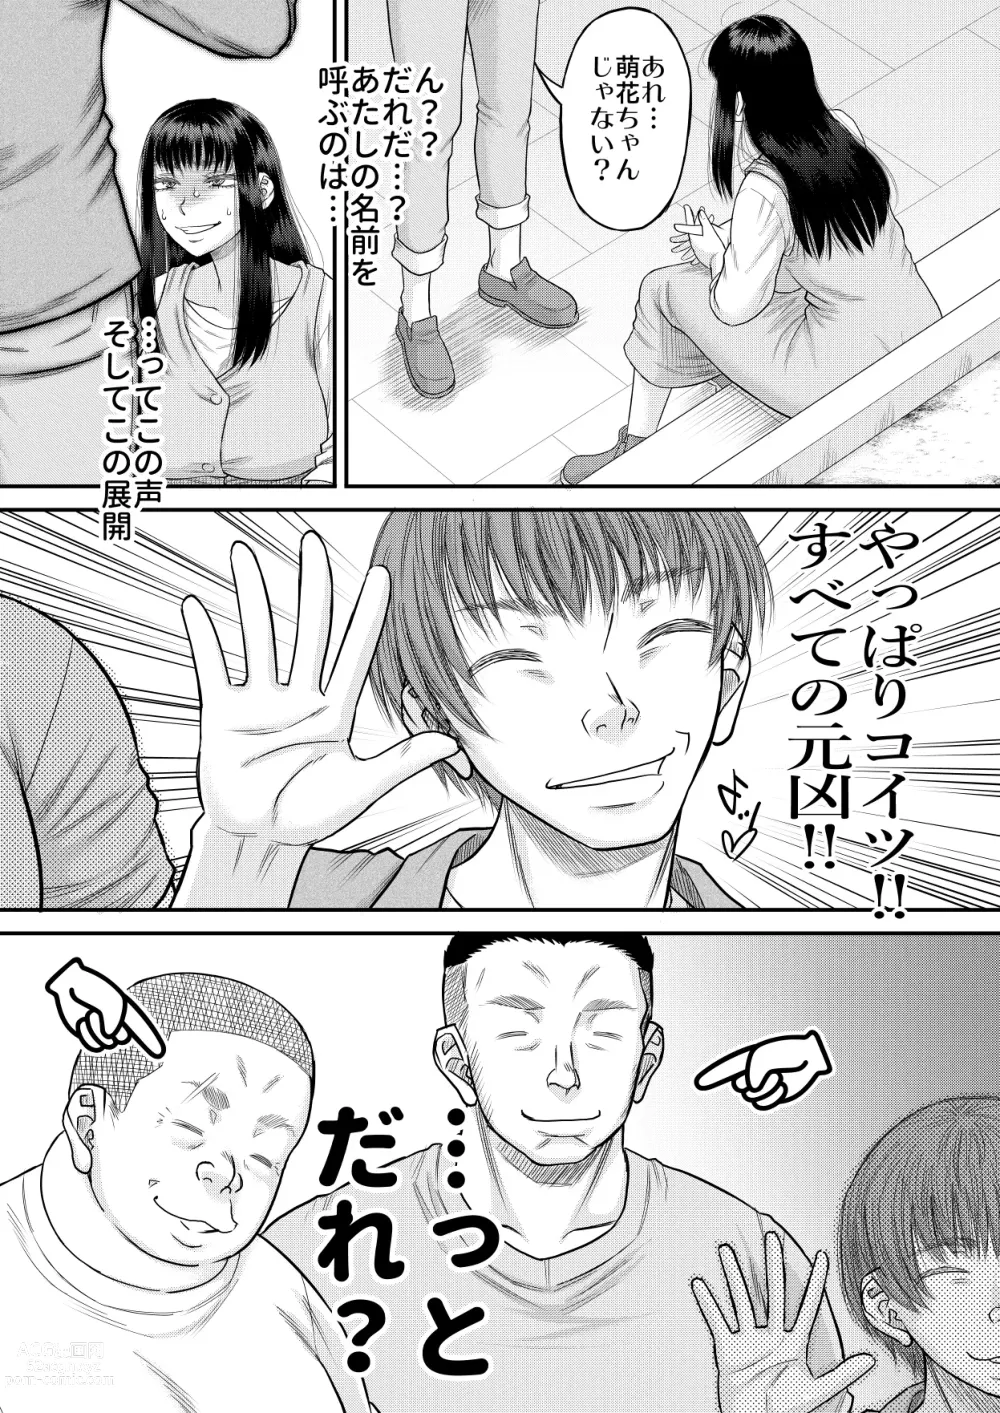 Page 7 of doujinshi Yavai yo Moeka-chan.zip